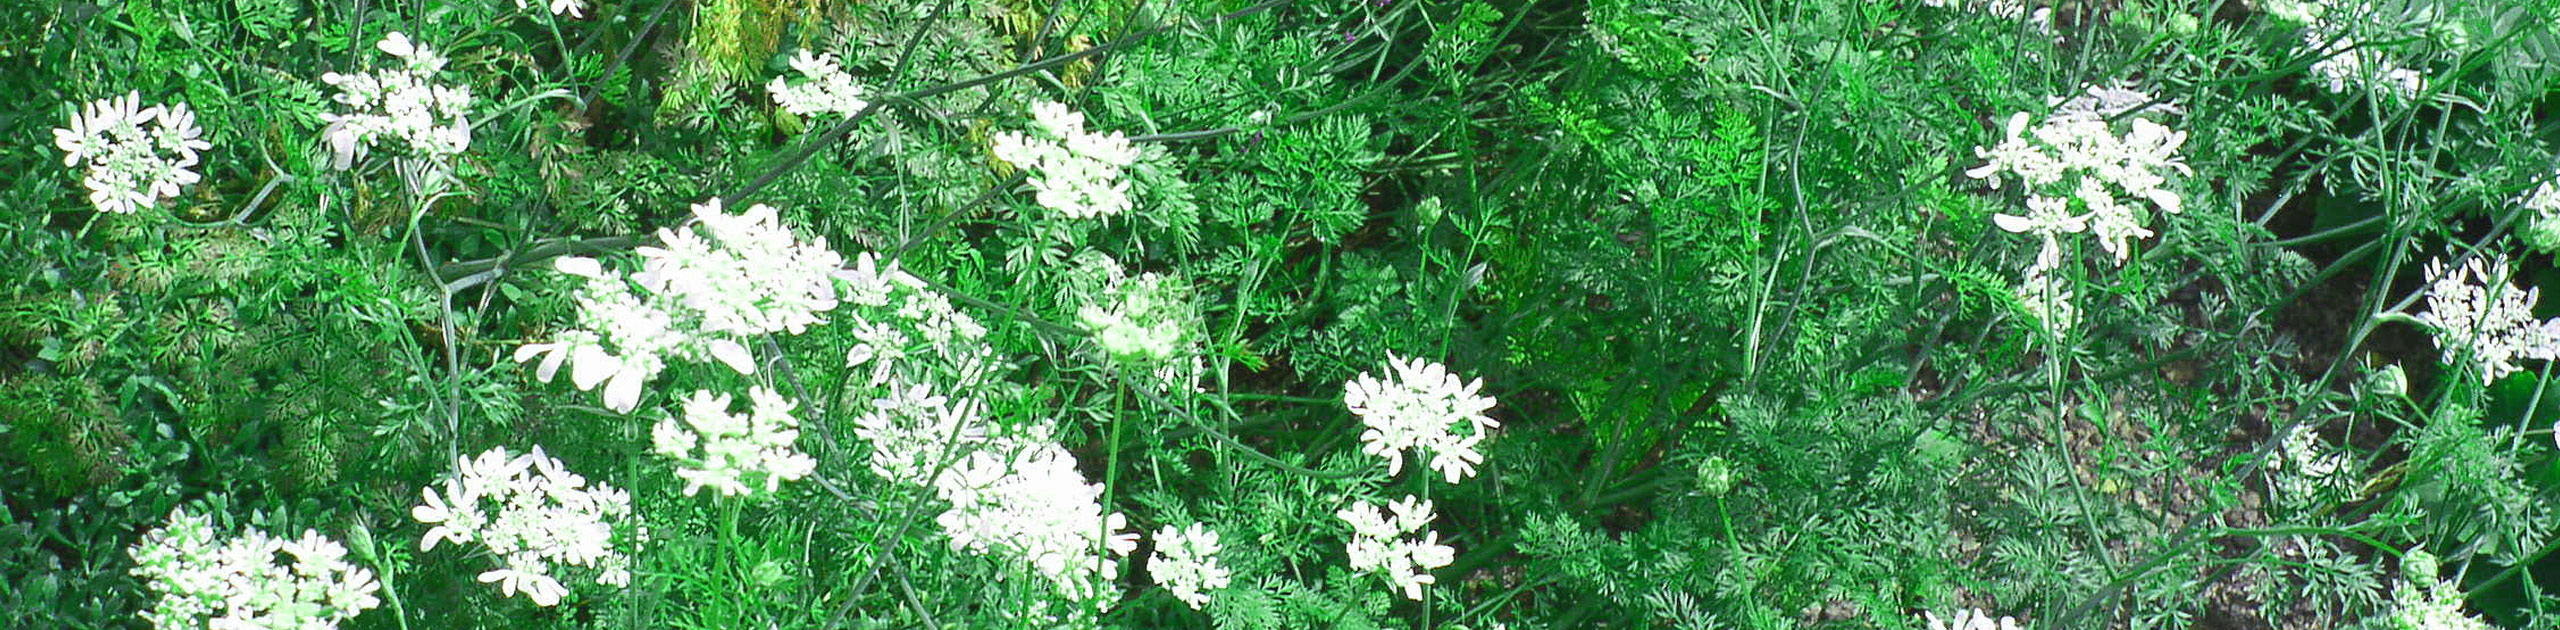 Weiße Blüten mit grünen Blättern